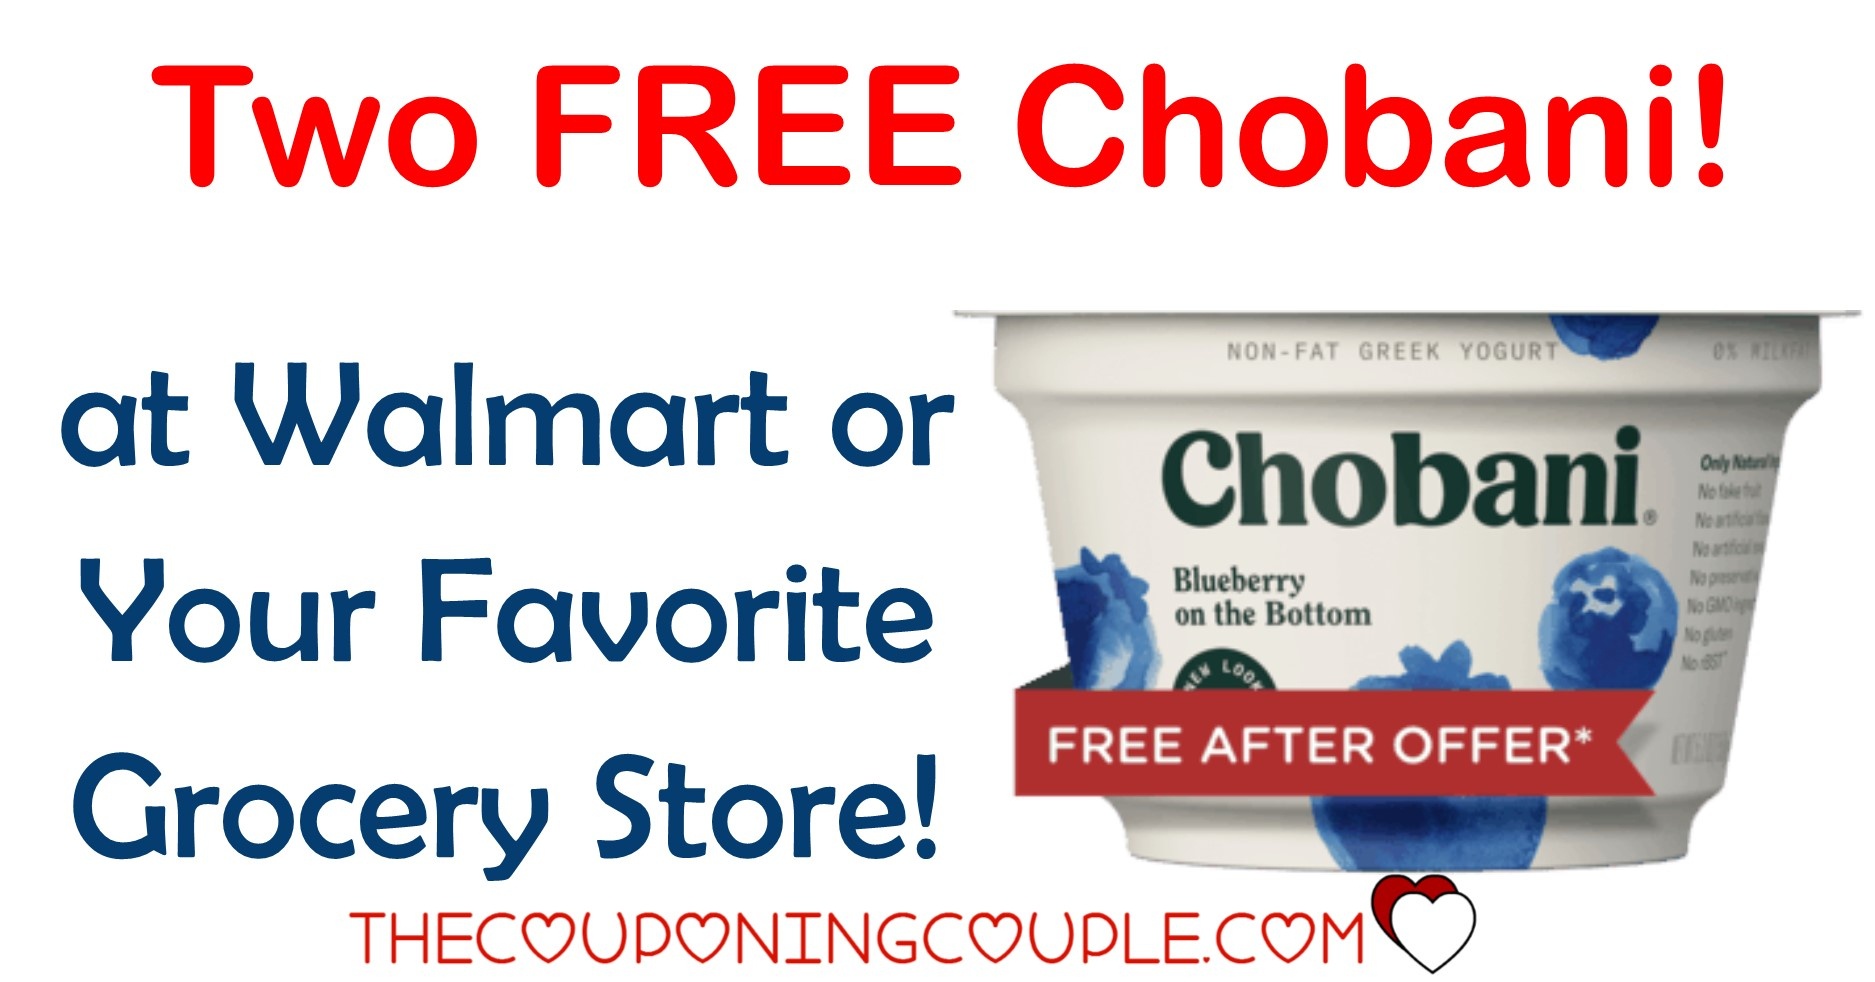 Free Printable Chobani Coupons Free Printable